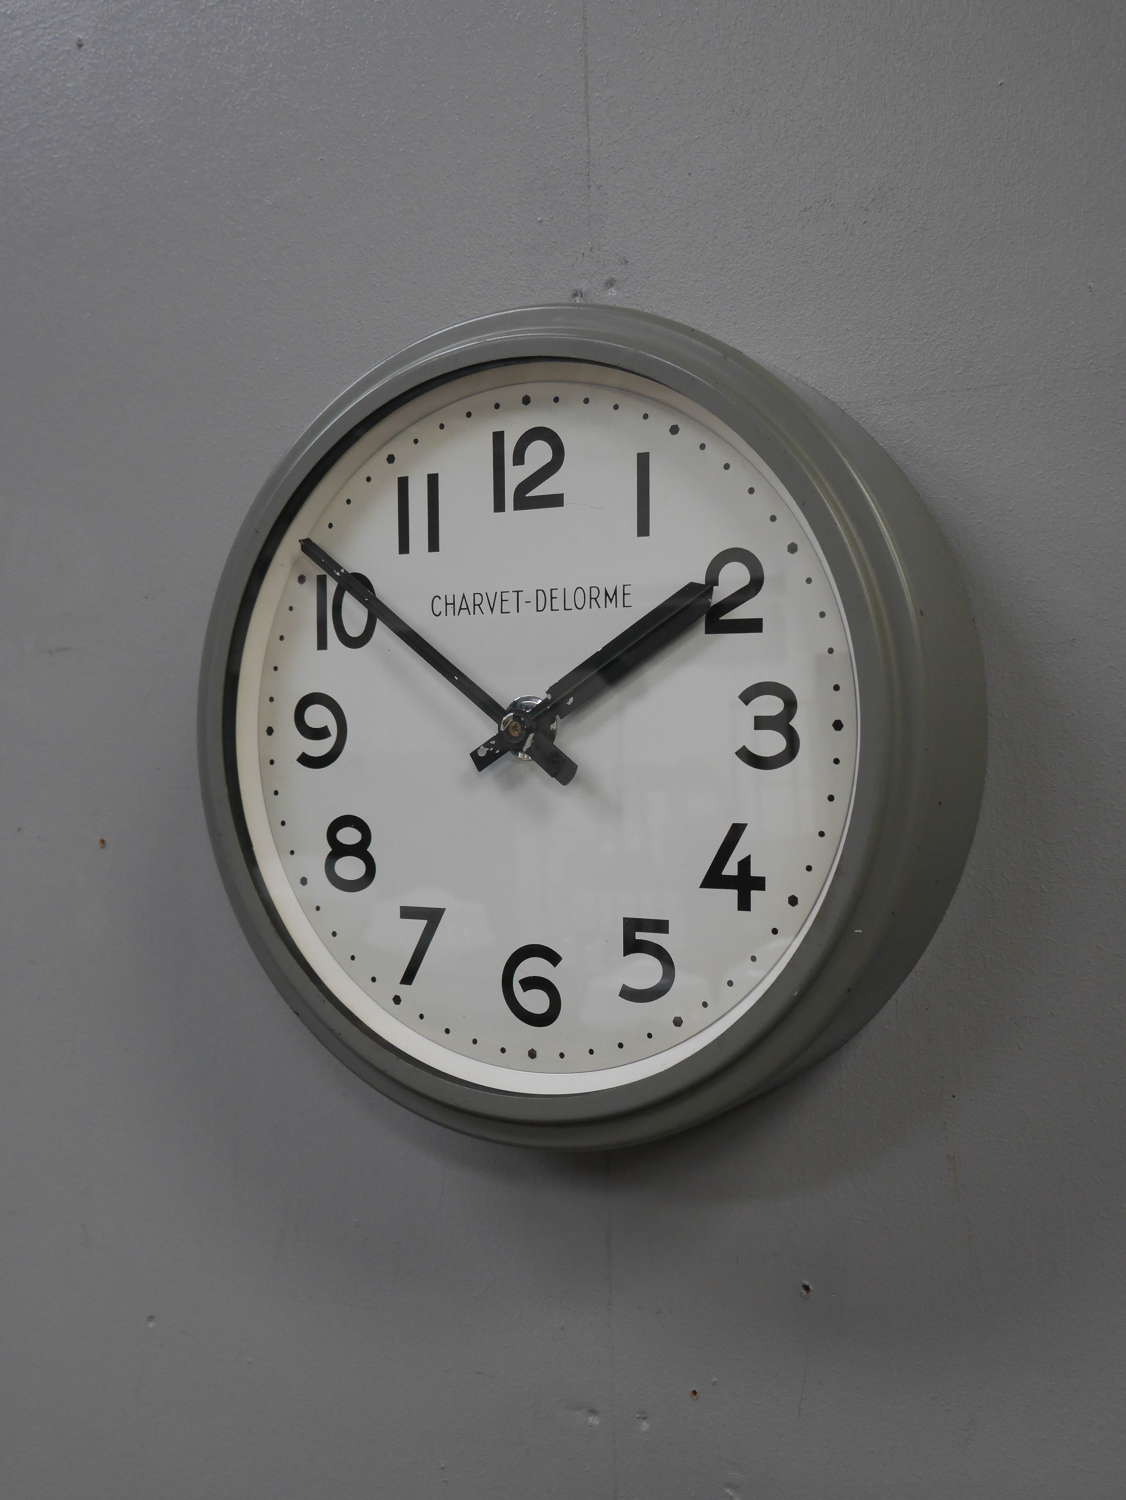 Charvet Delorme Factory Clock